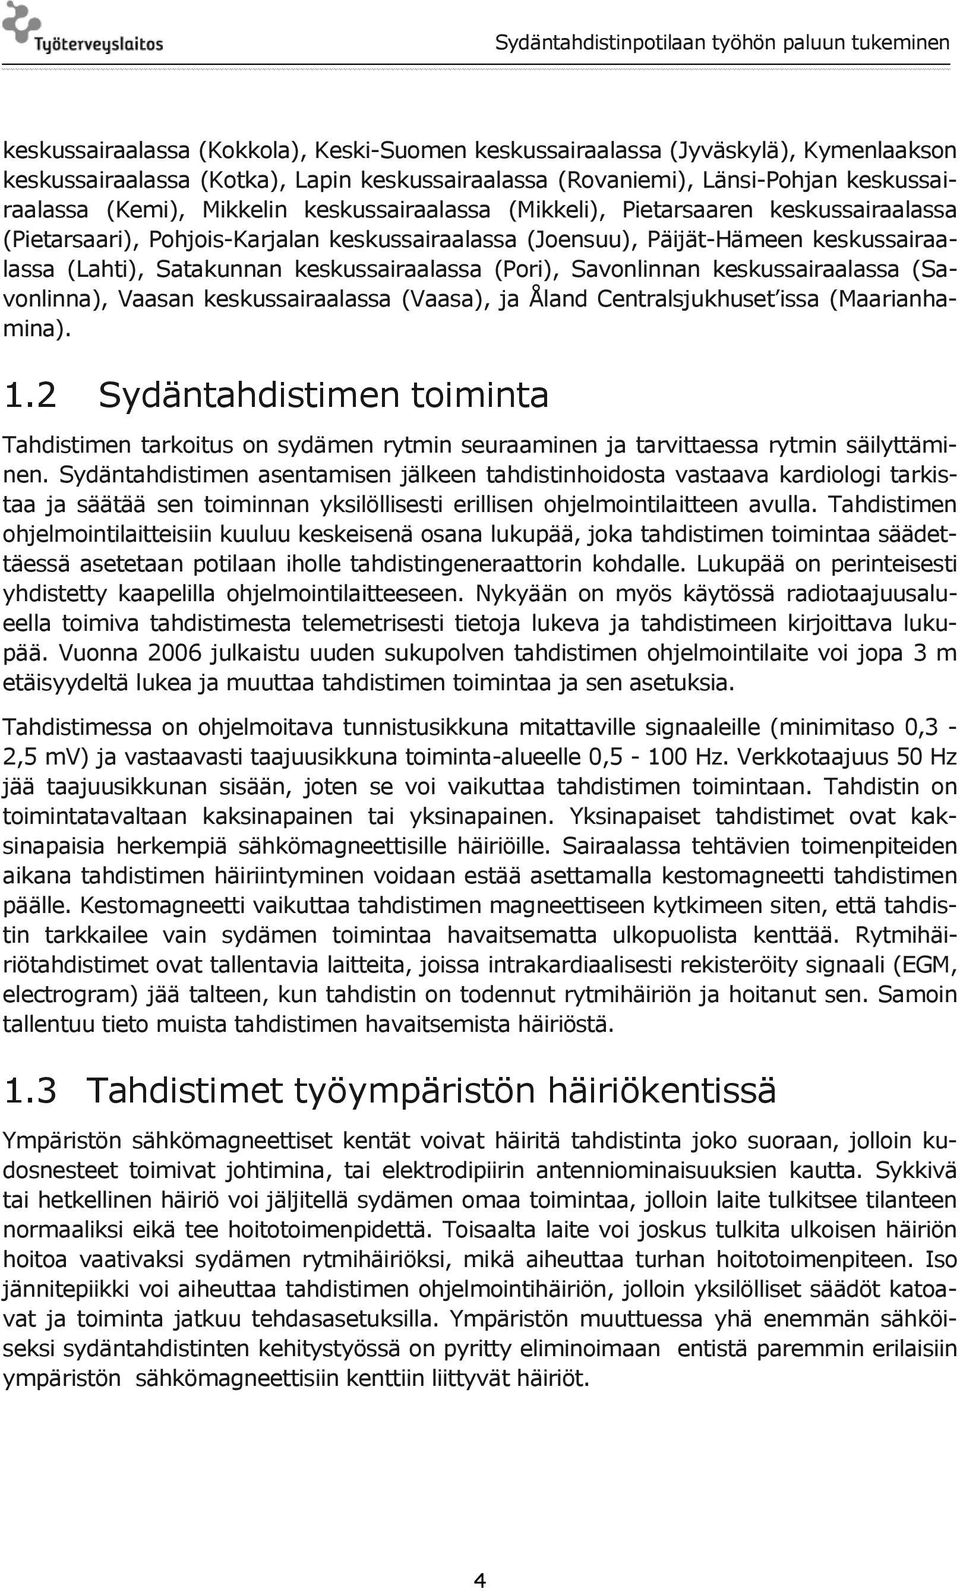 Savonlinnan keskussairaalassa (Savonlinna), Vaasan keskussairaalassa (Vaasa), ja Åland Centralsjukhuset issa (Maarianhamina). 1.